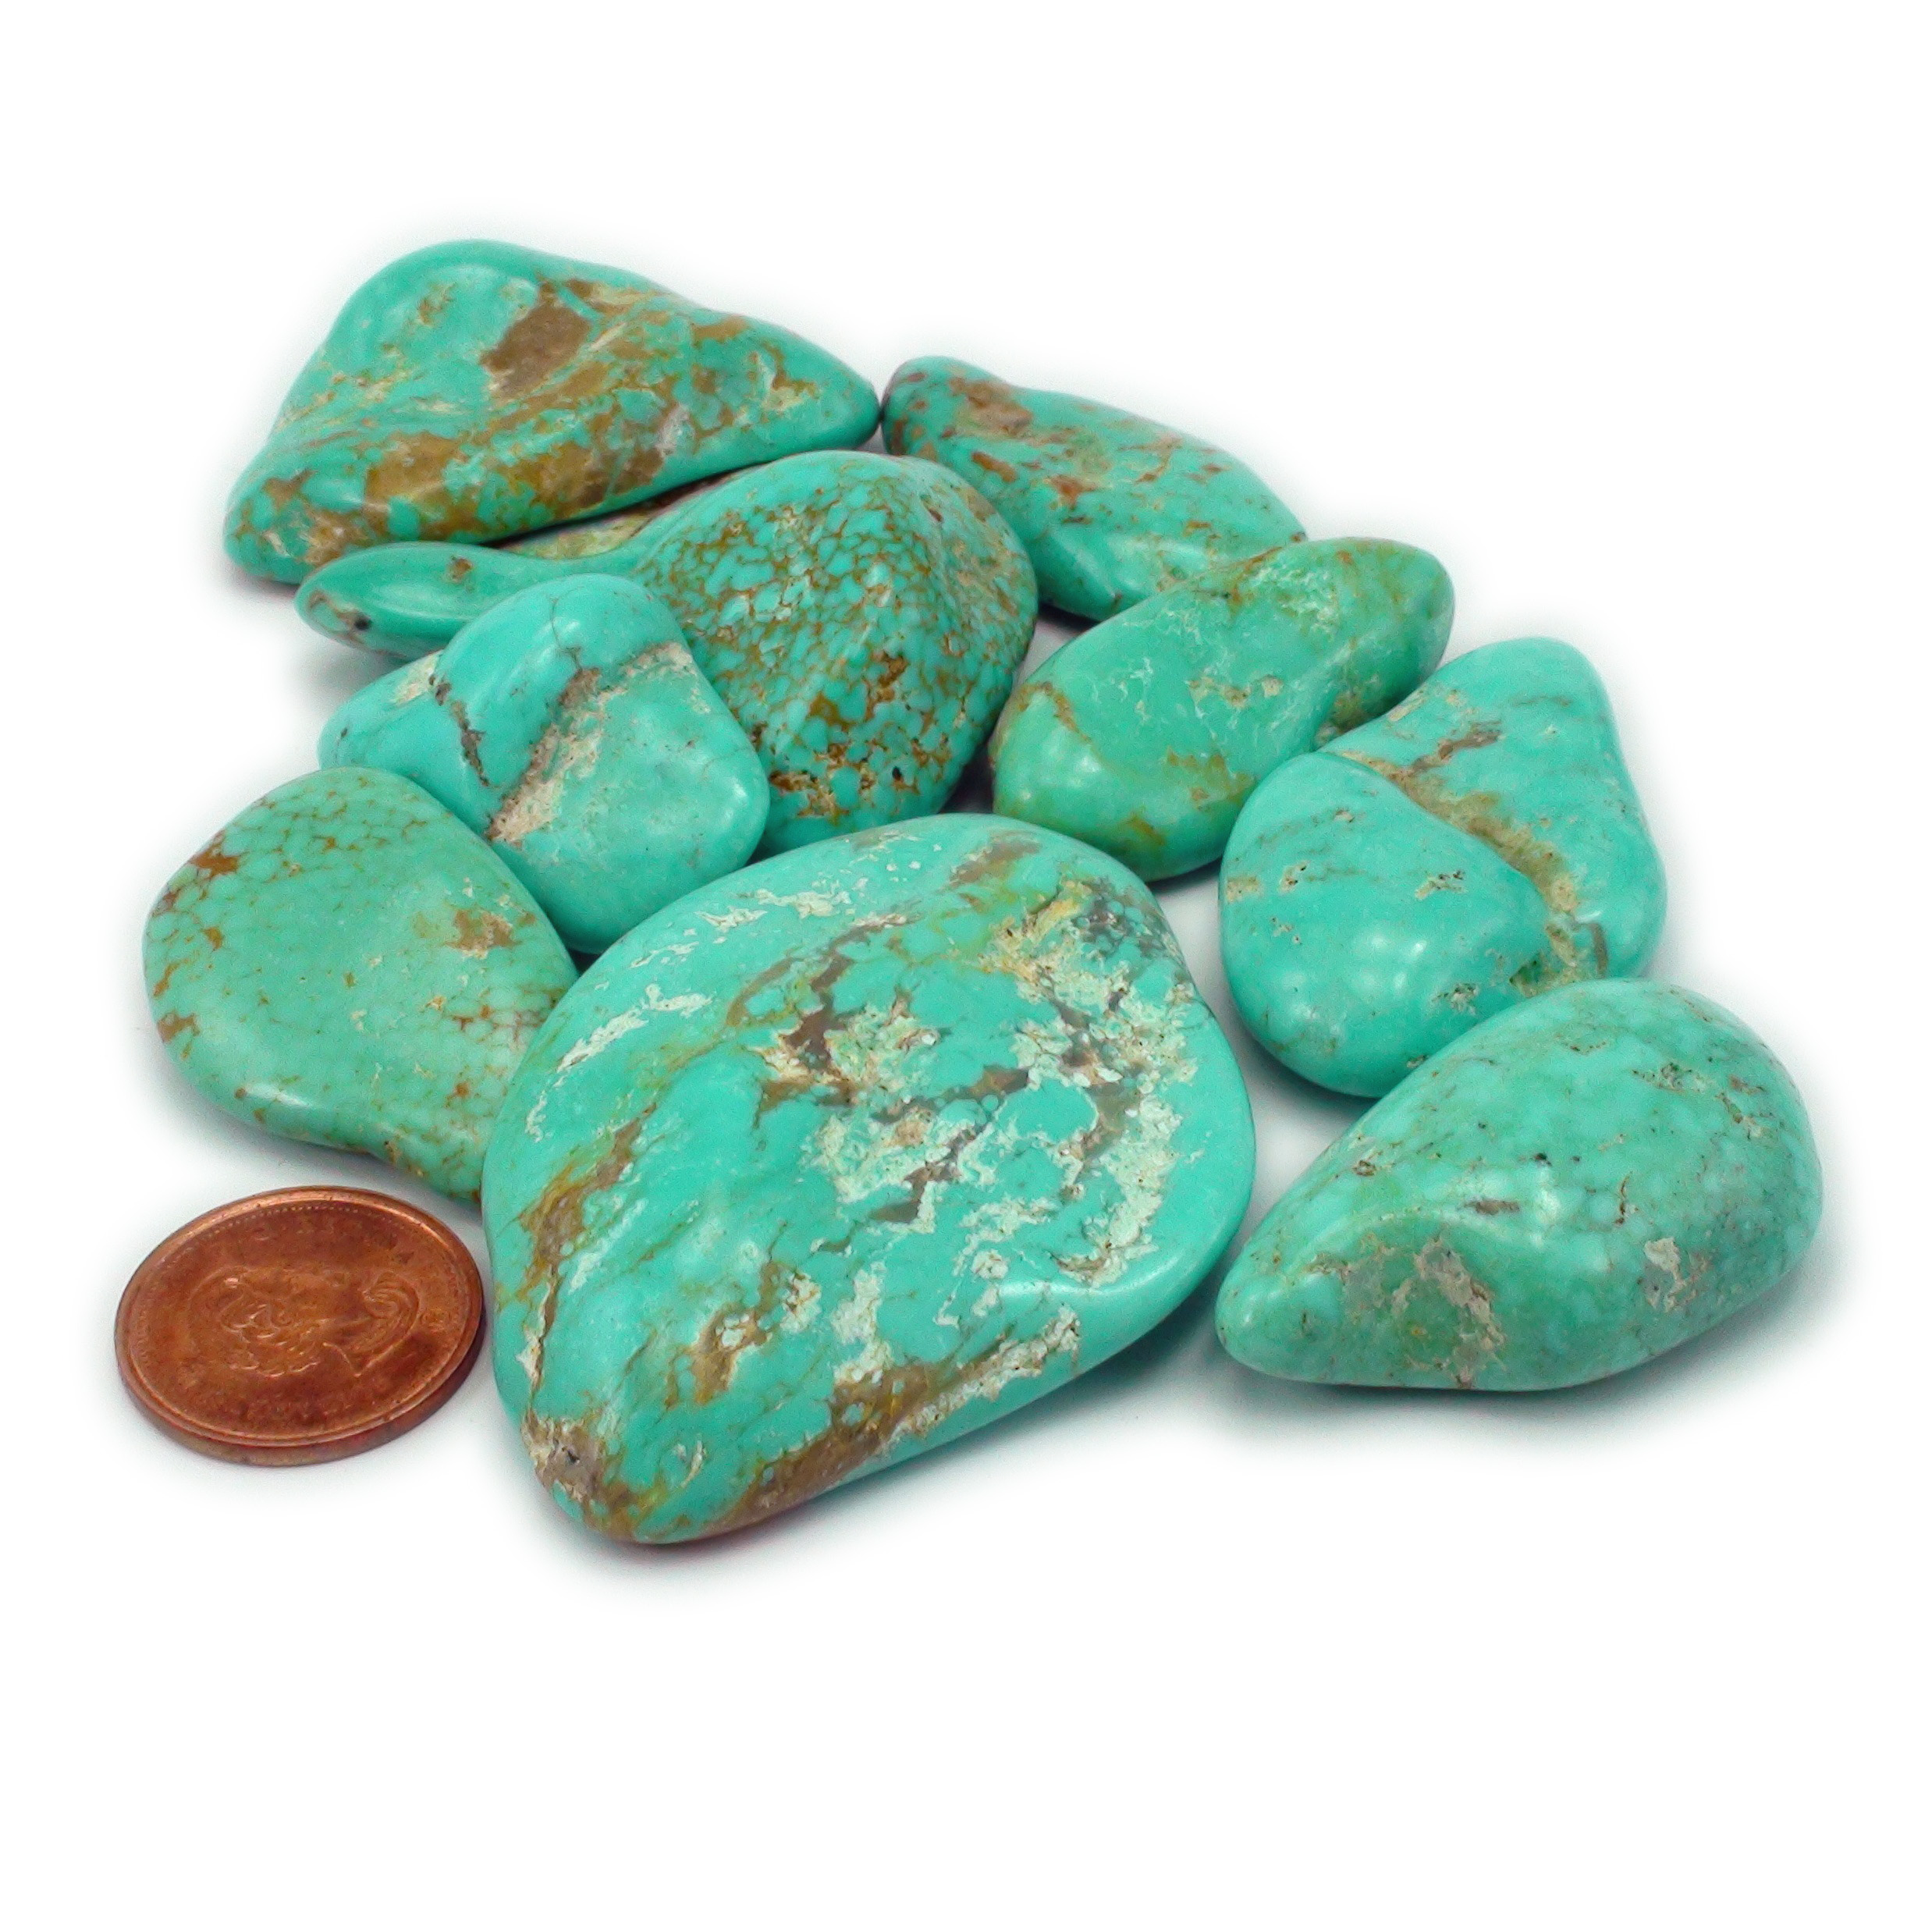 Natural Turquoise Tumbled Stone Wholesale by Stonebridge Imports.